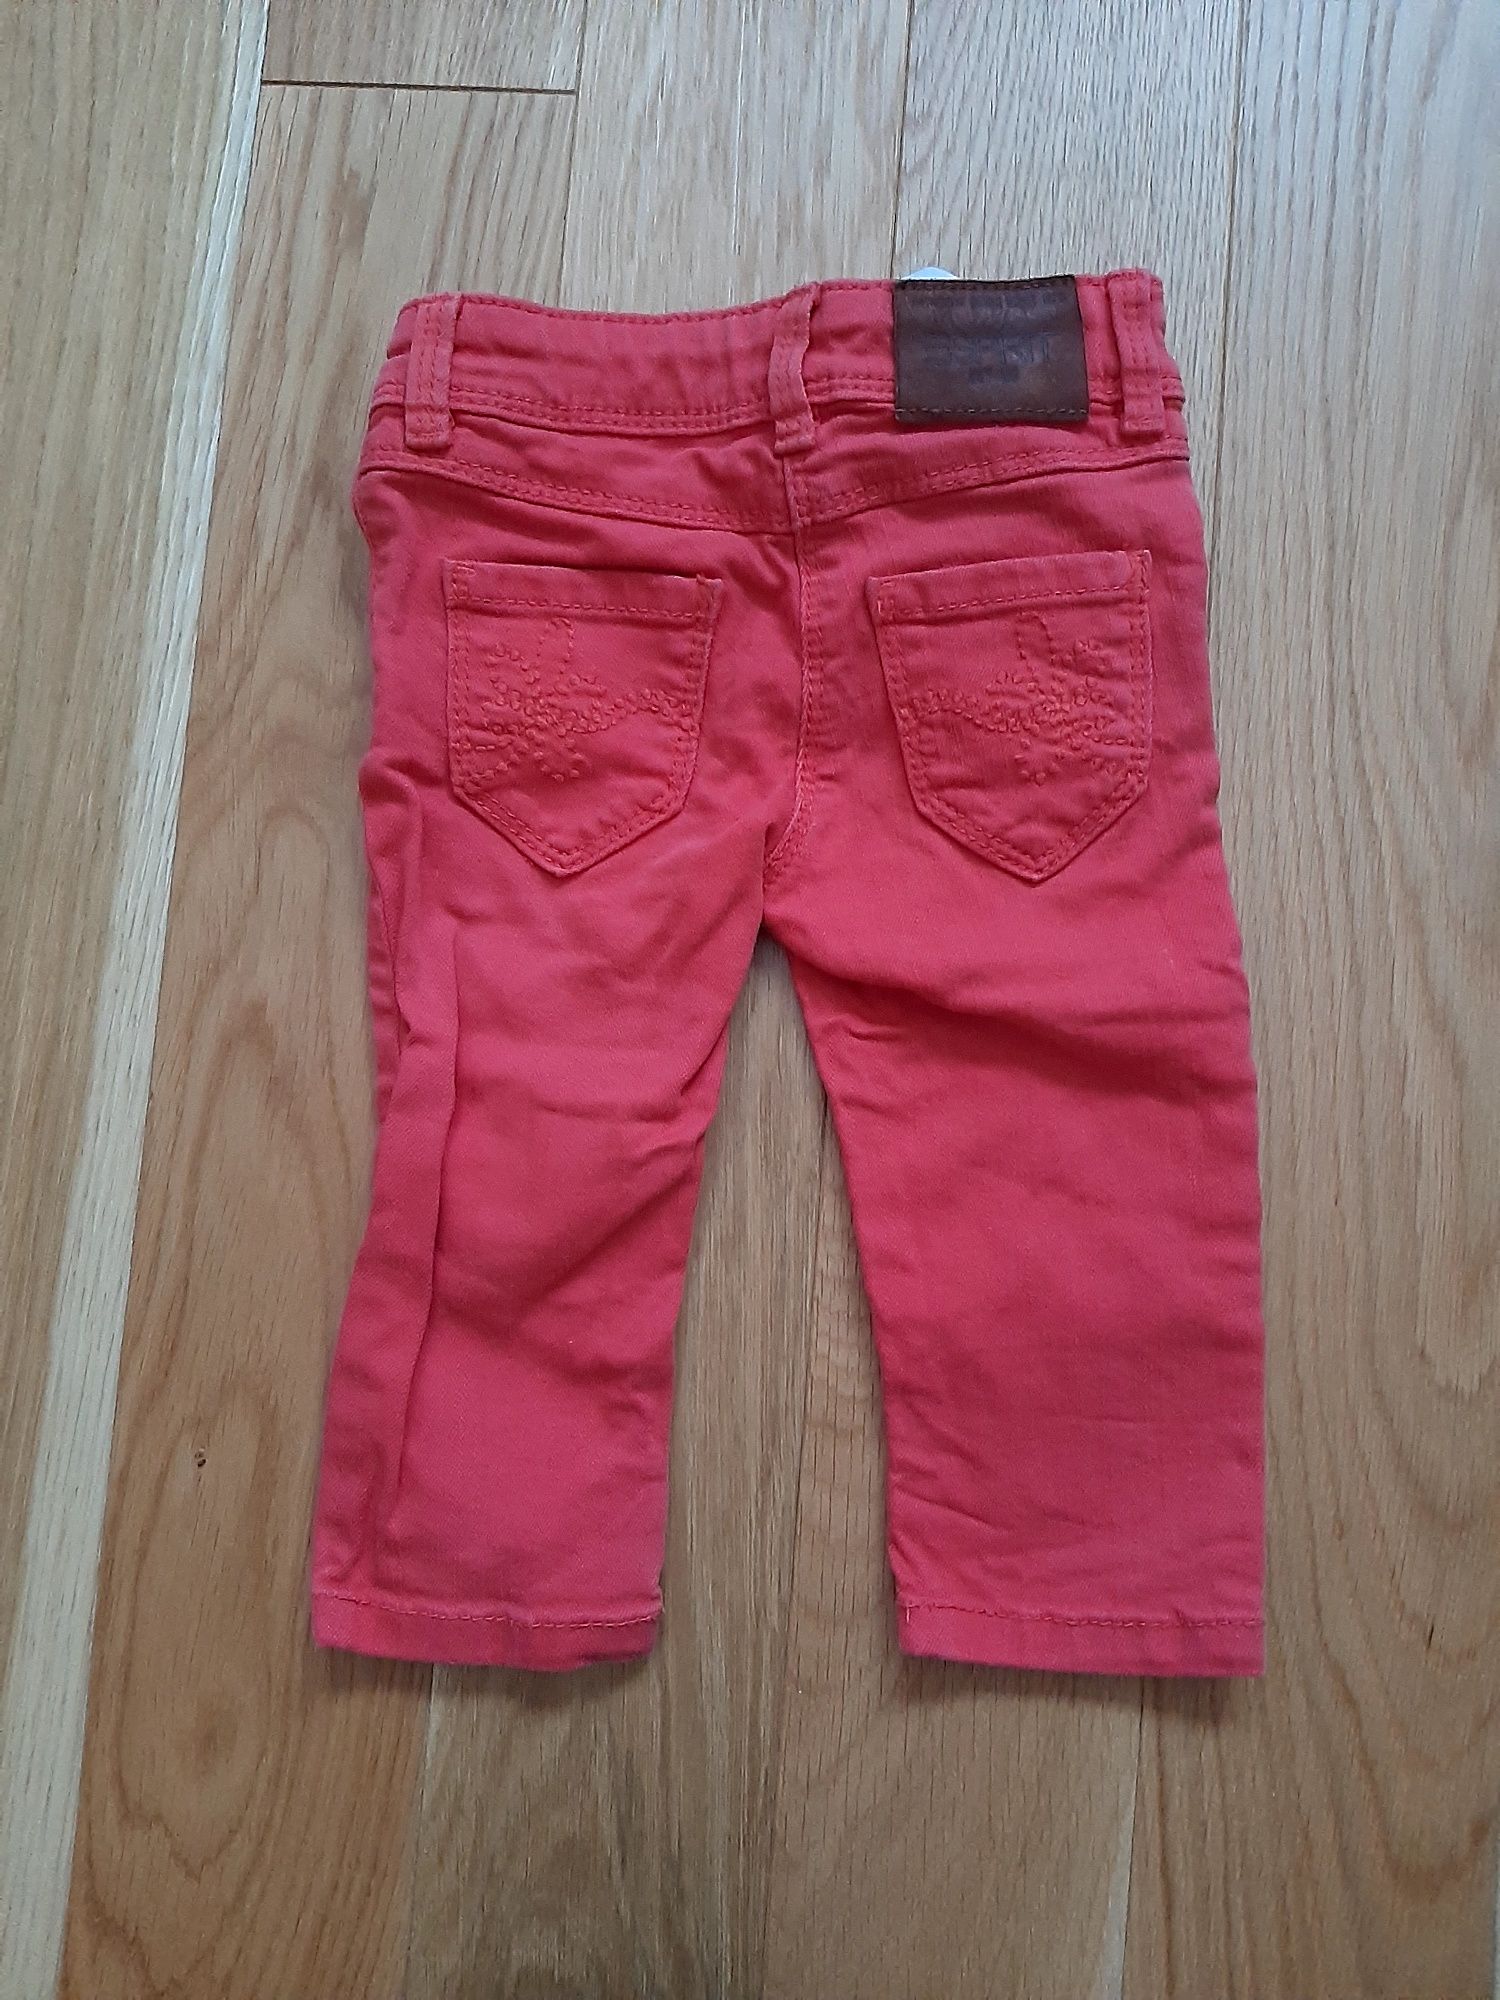 Czerwone koralowe spodnie spodenki Esprit 92